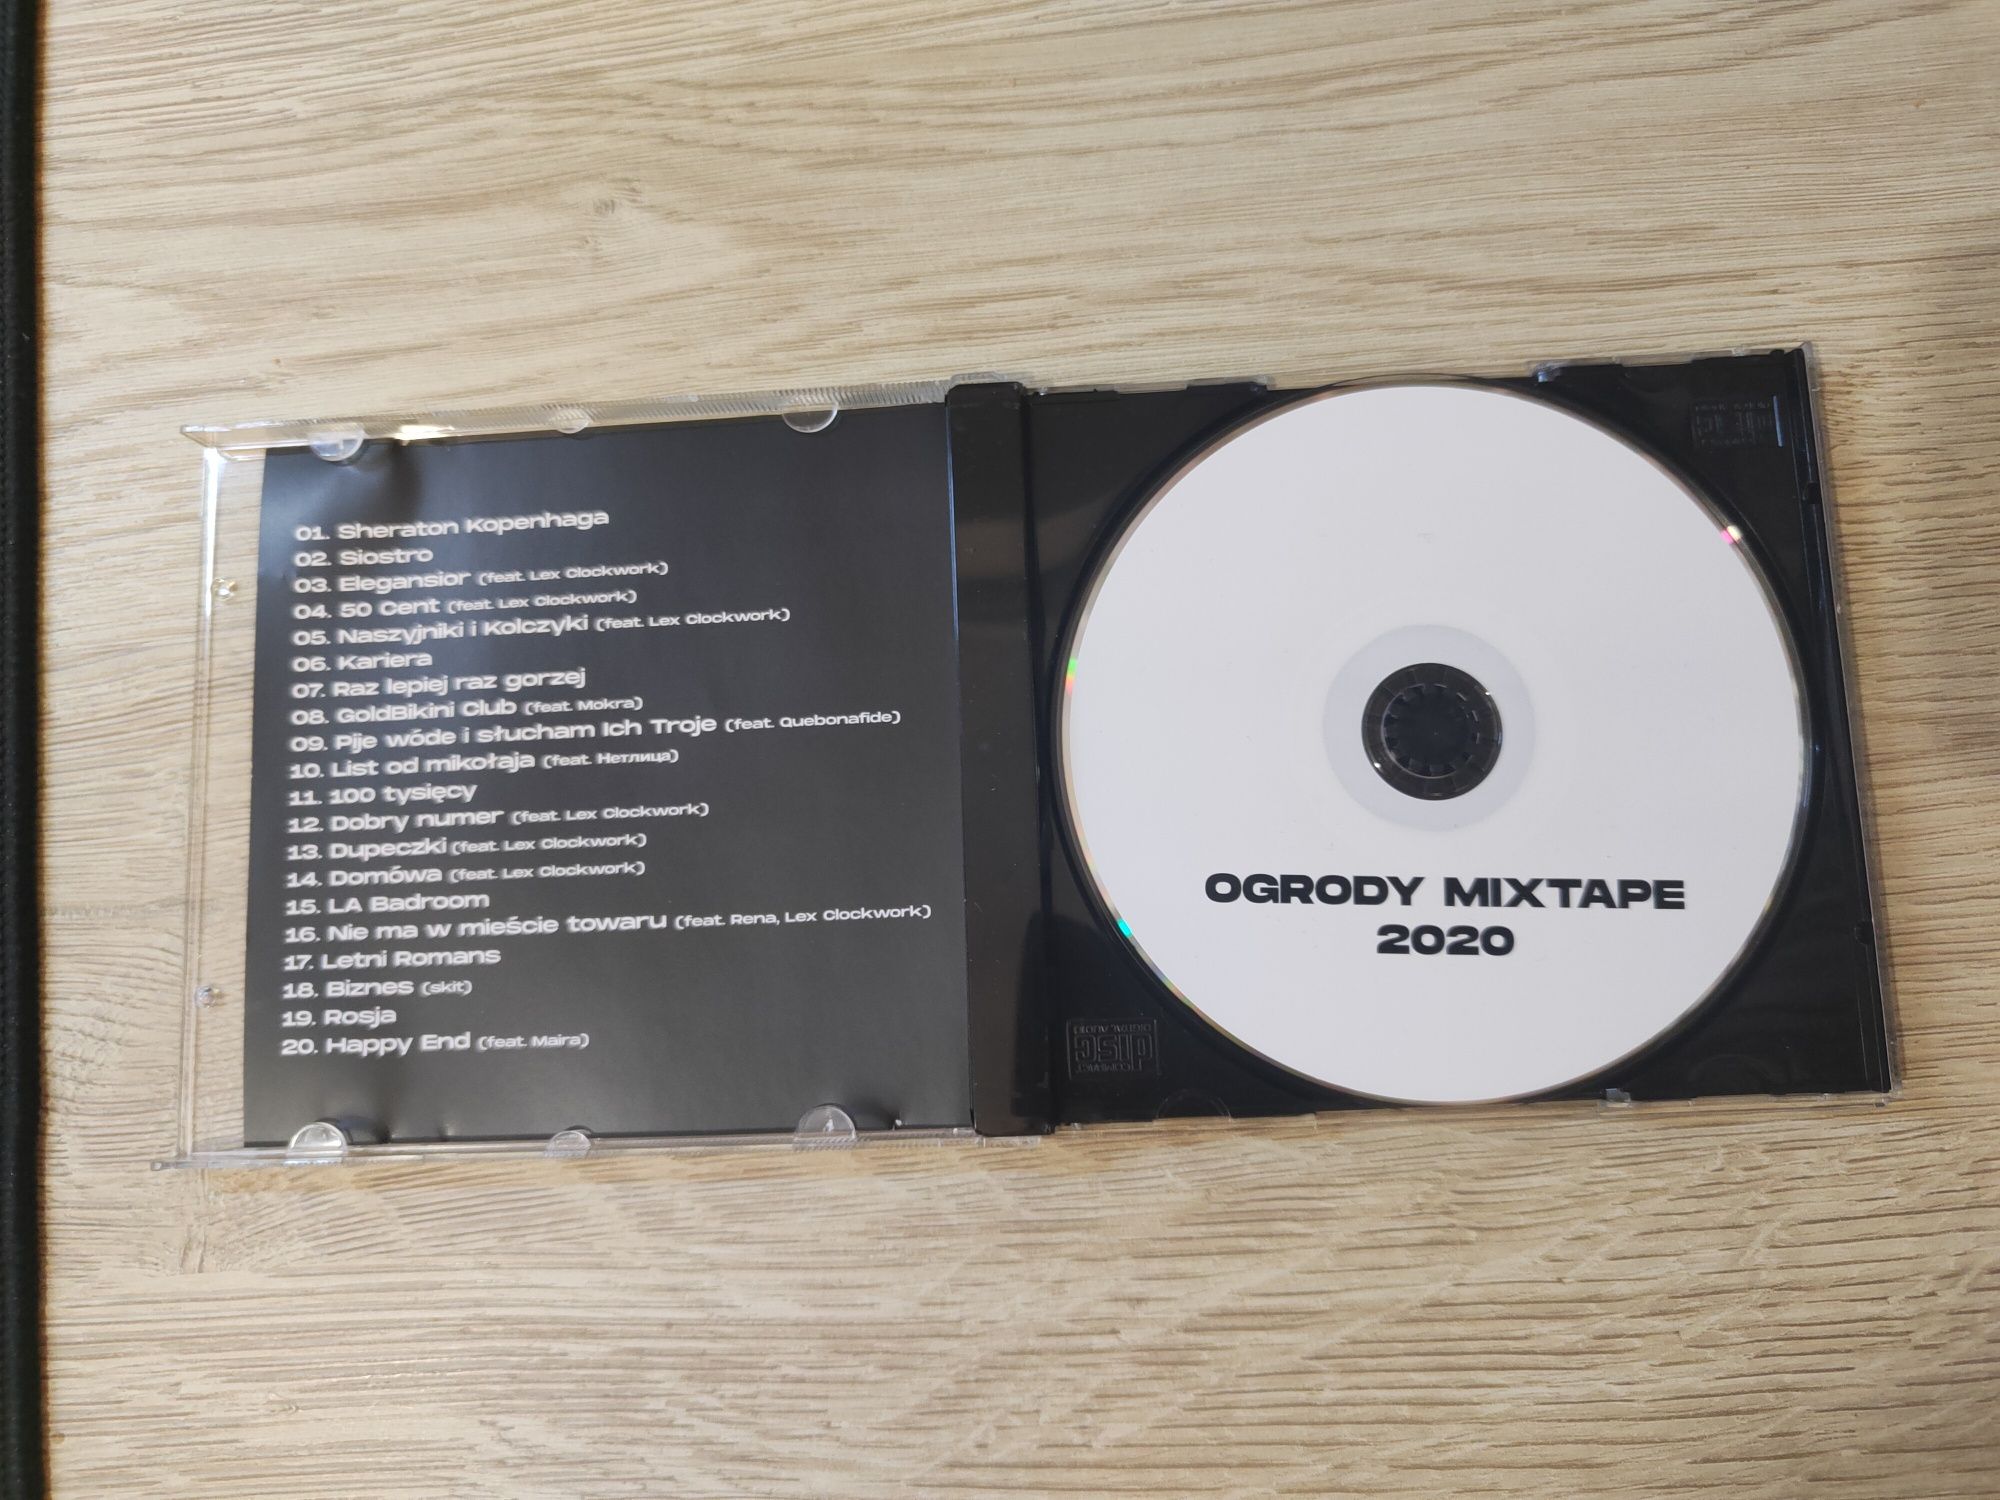 Kukon - Ogrody Mixtape 2 piękny syf Ogrody 2020 lex Clockwor rap płyty